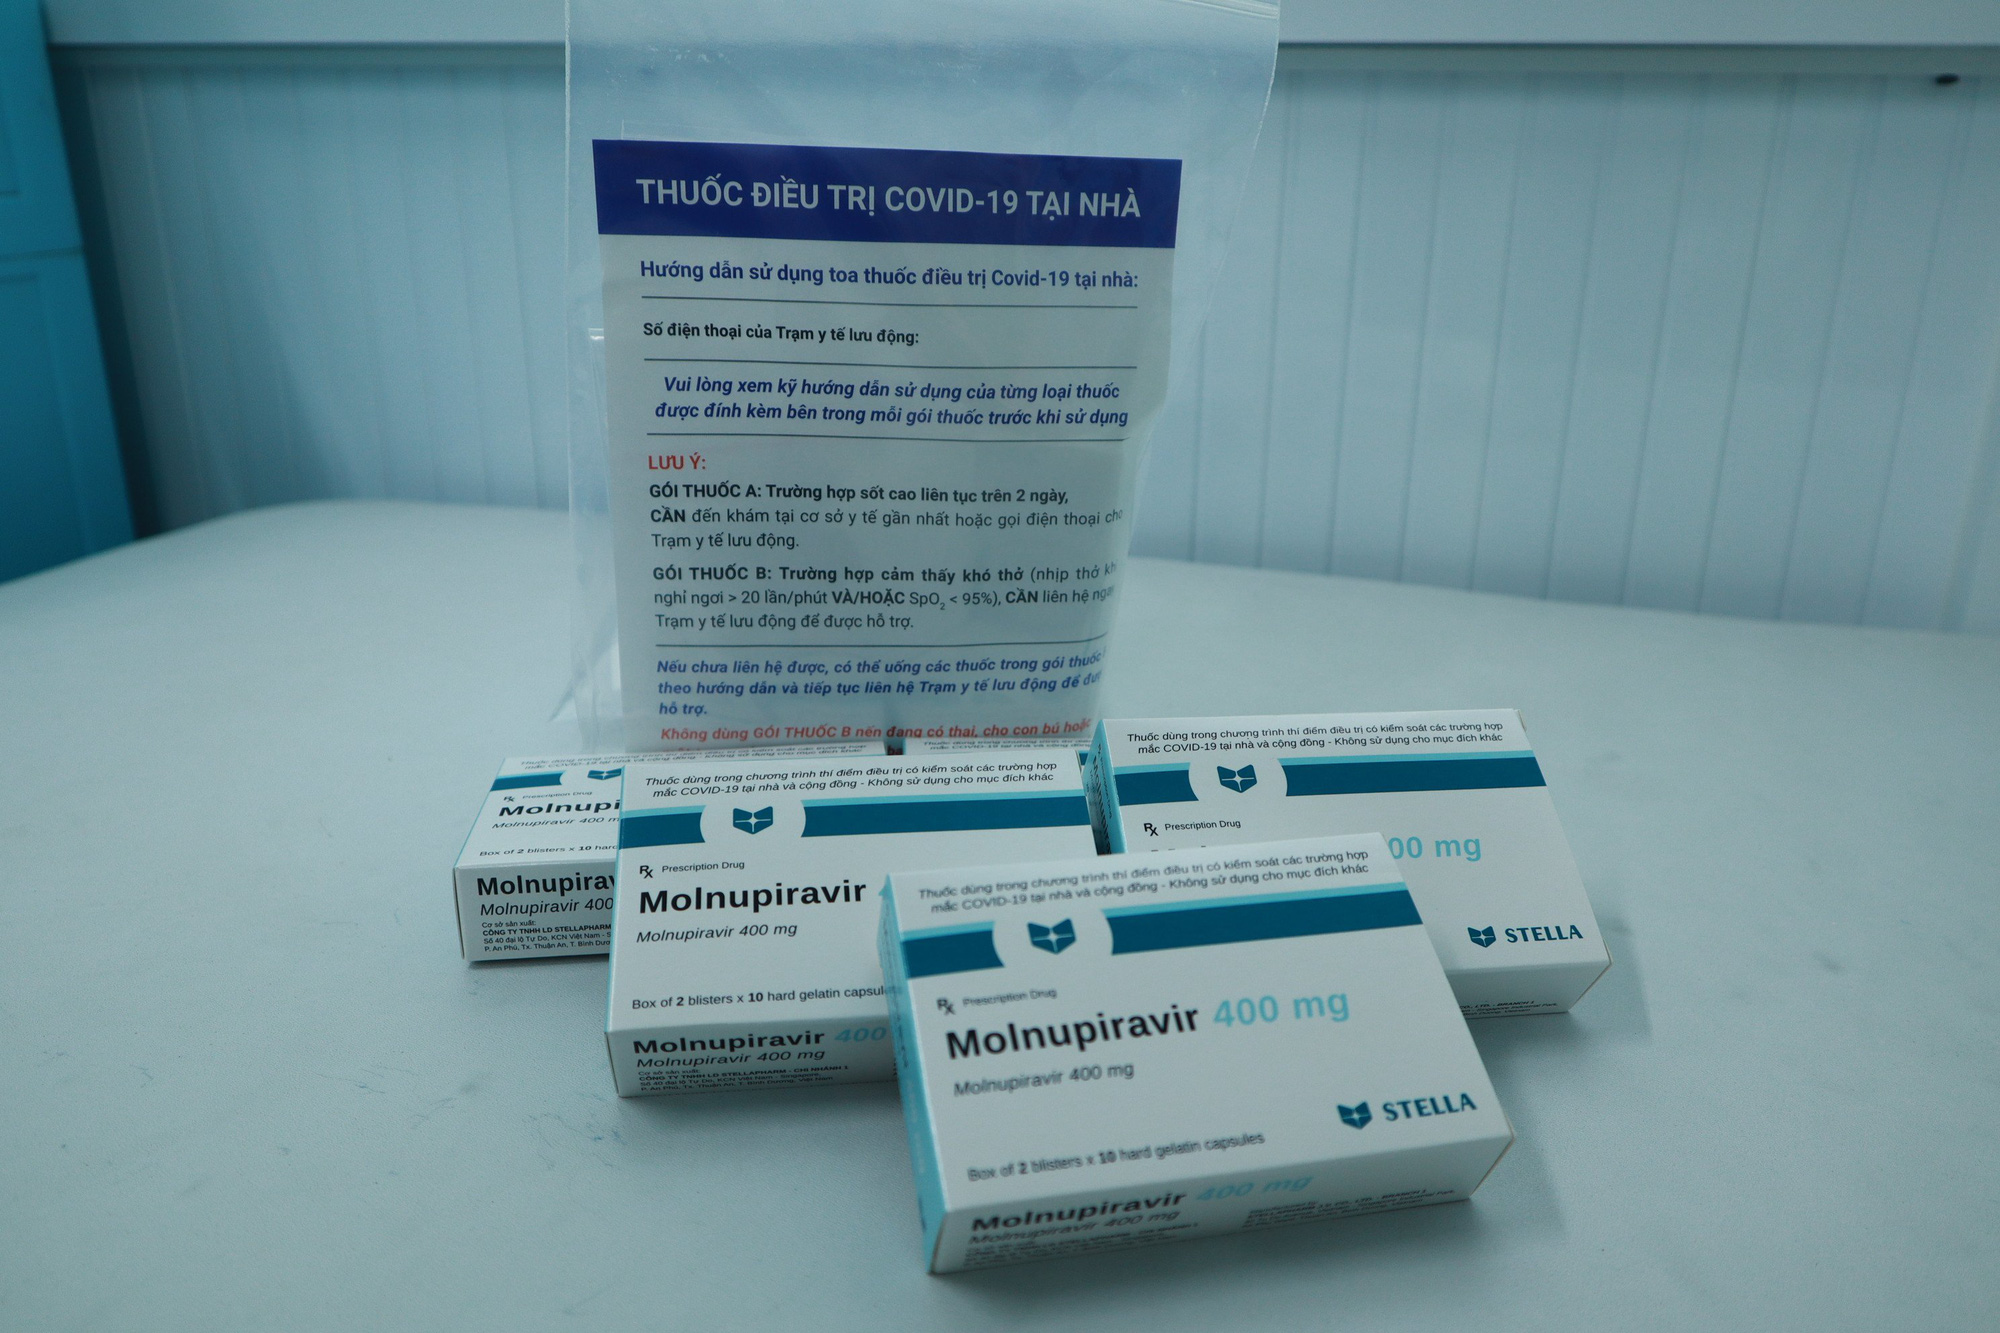 Bộ Y tế đã phân bổ hơn 400.000 liều Molnupiravir điều trị bệnh nhân COVID-19 thể nhẹ tại 53 địa phương - Ảnh 1.